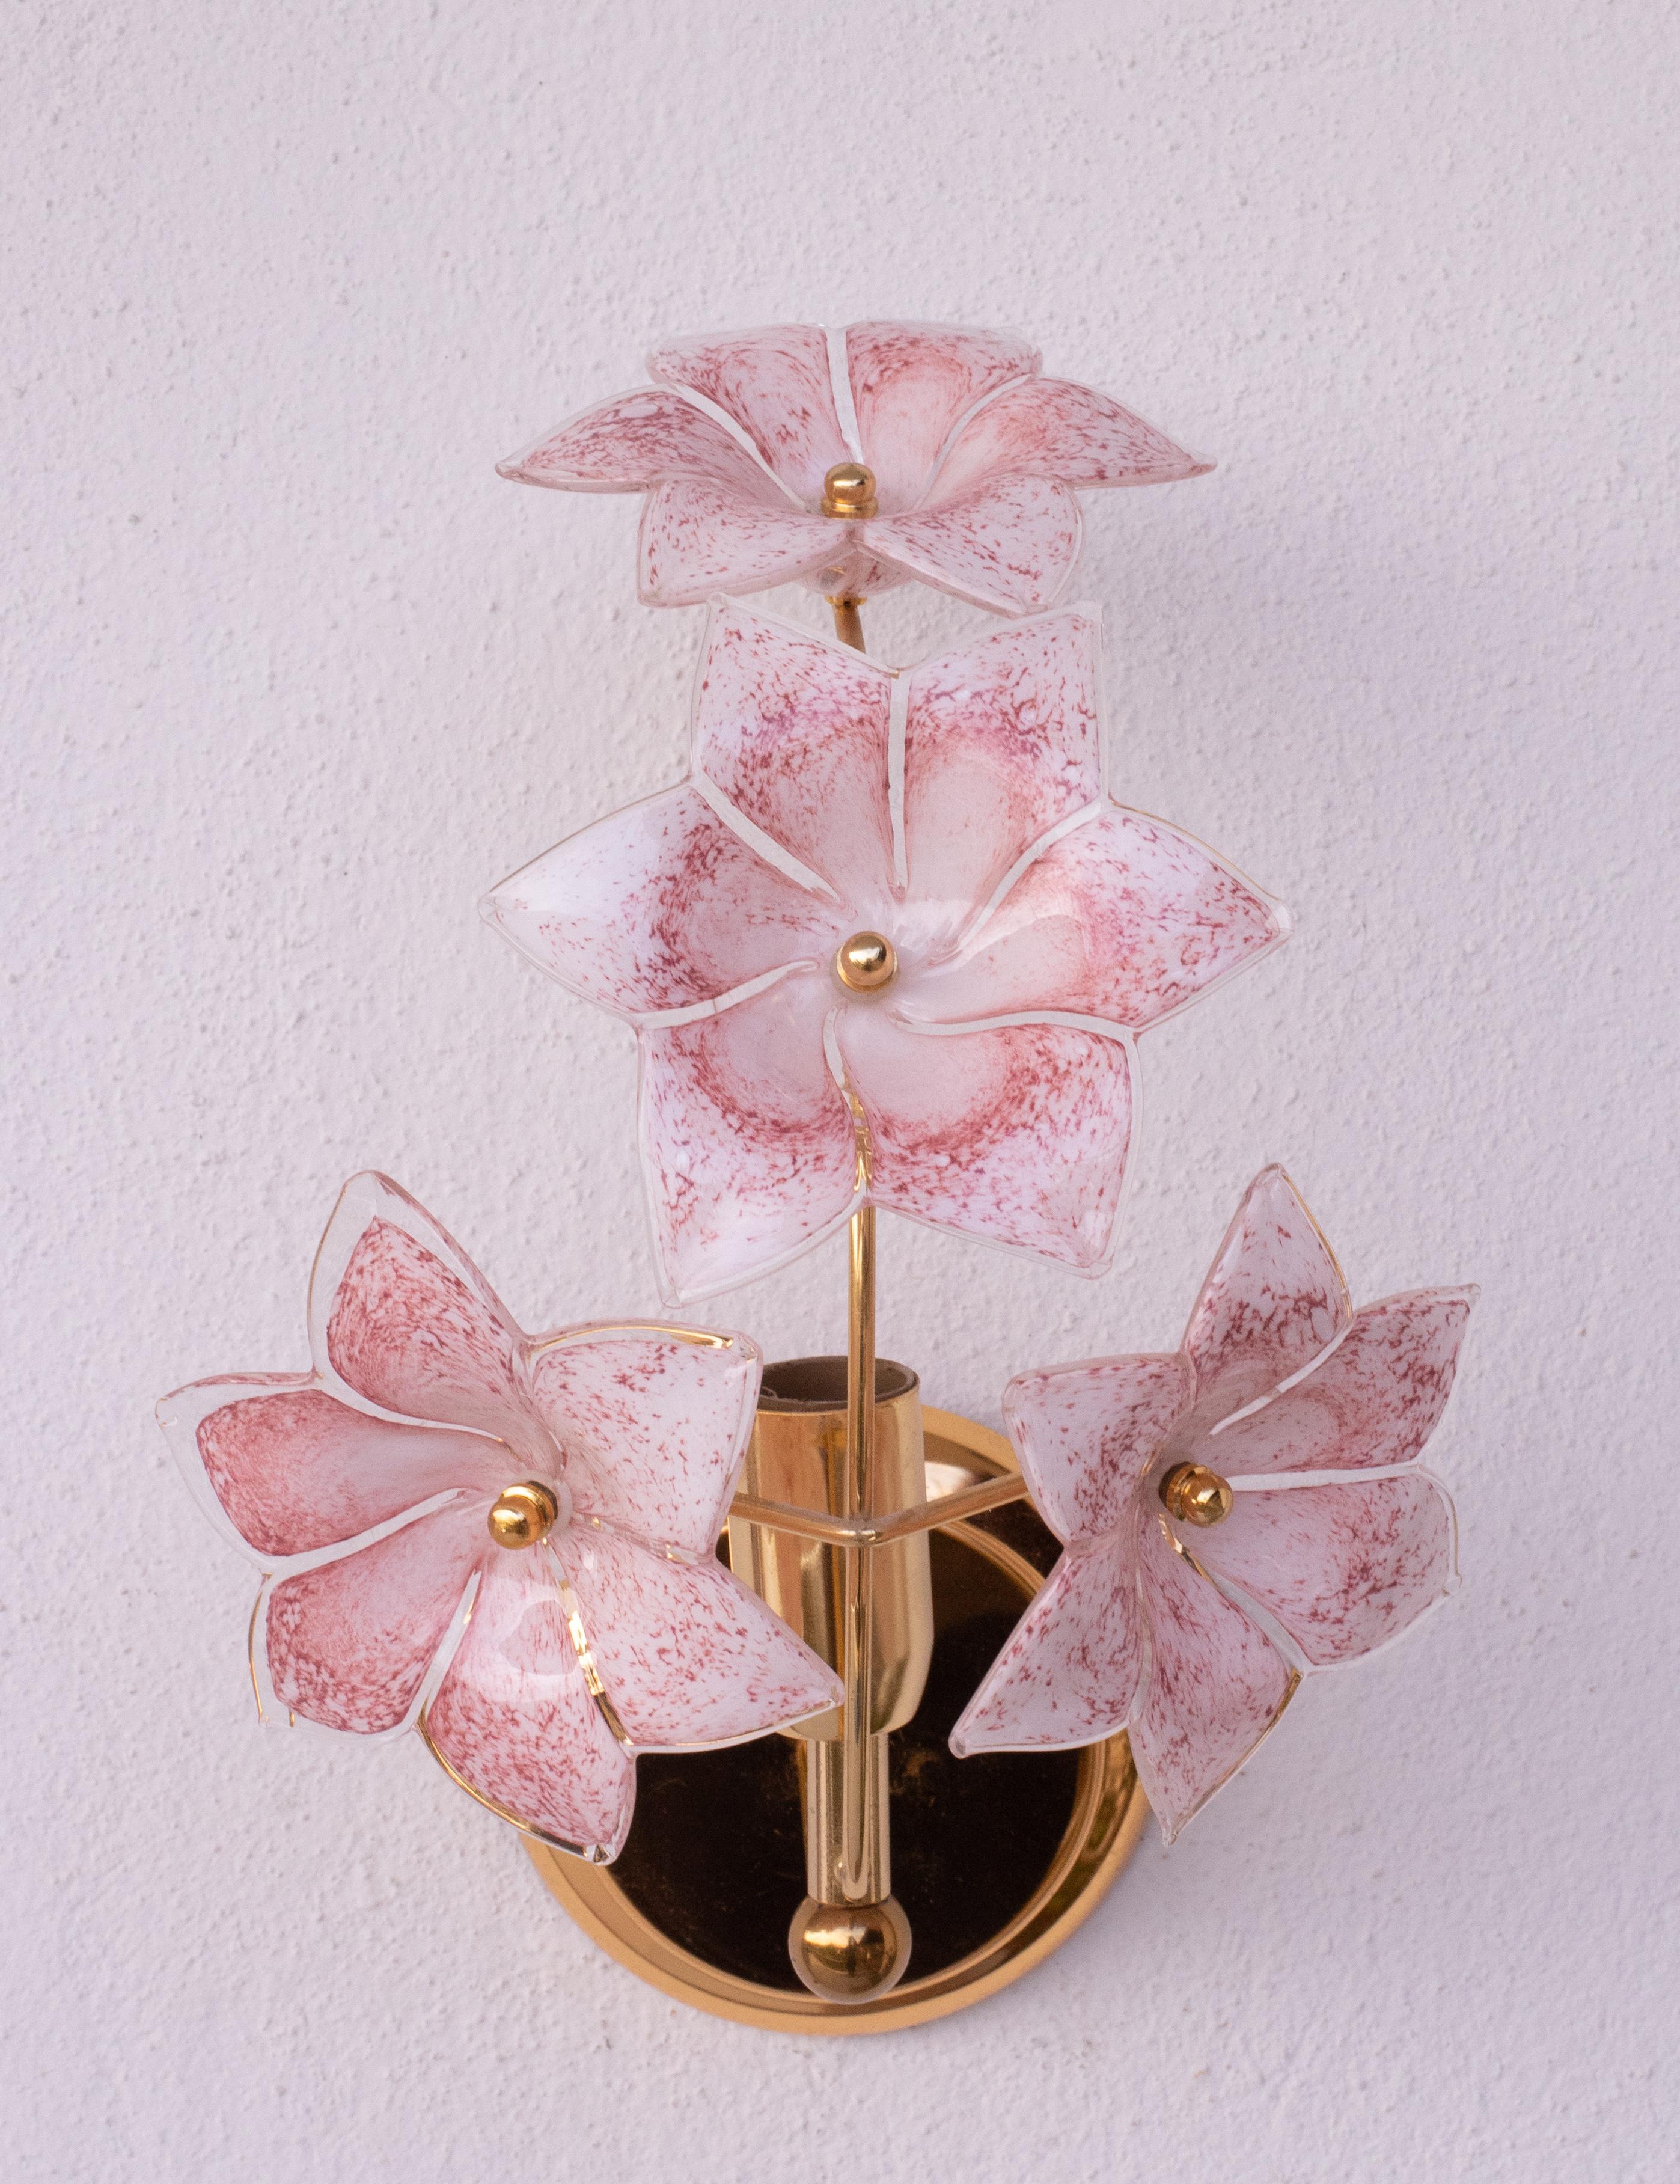 Jolie paire d'appliques murales avec des fleurs roses en verre de Murano.
Convient pour une ampoule à vis E14, normes européennes, possibilité de remplacement par des normes américaines.
Mesures :
23 cm de largeur
Hauteur 28 cm
20 cm de profondeur